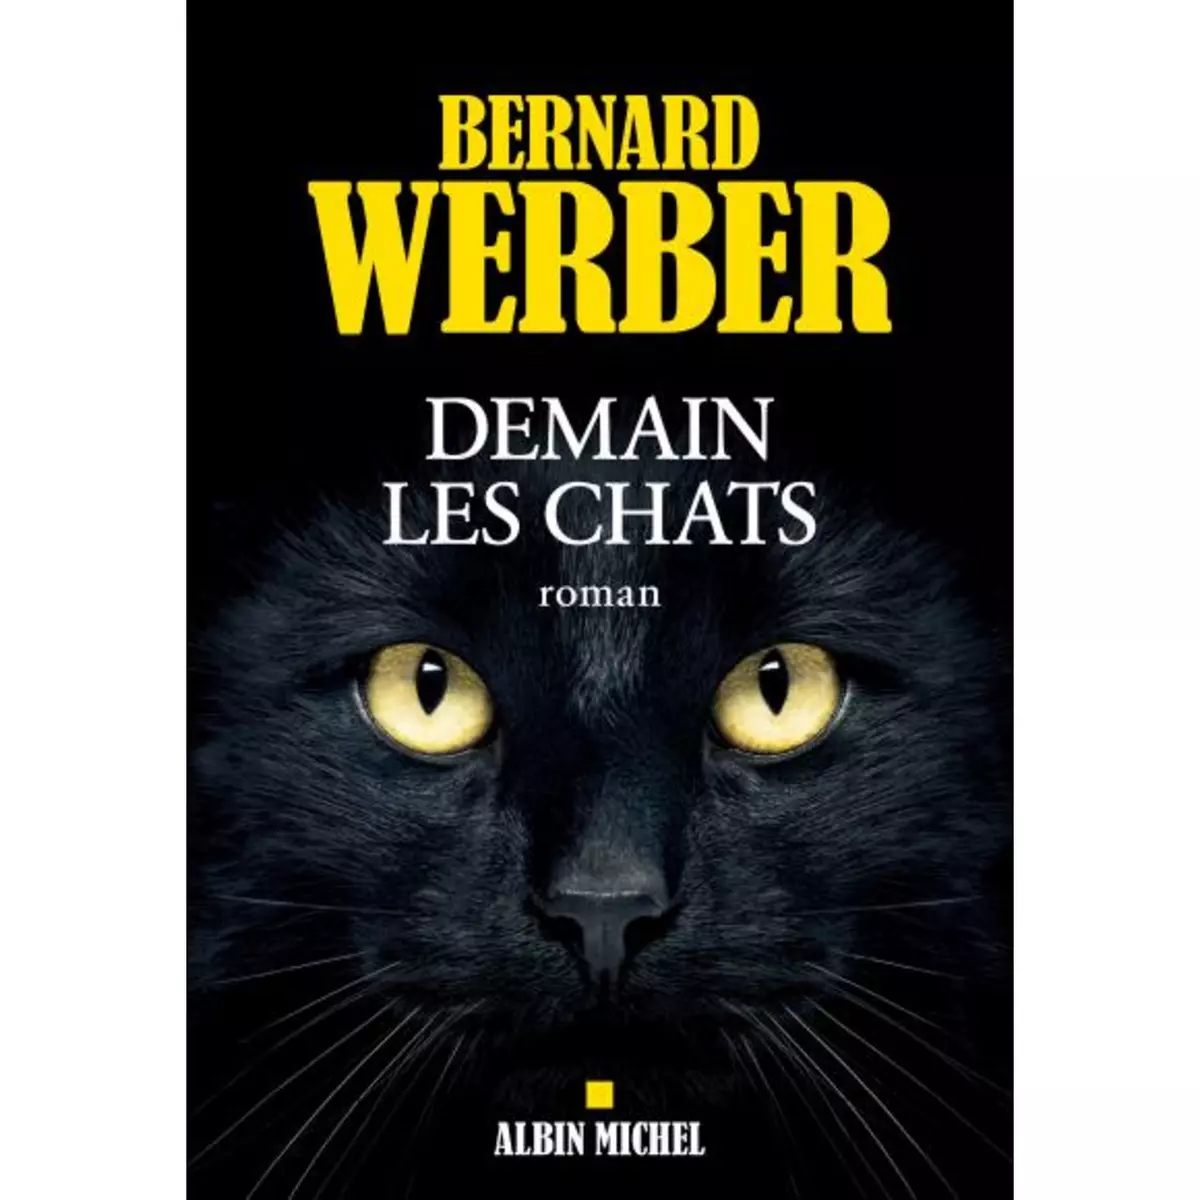 Demain les chats - Bernard Werber